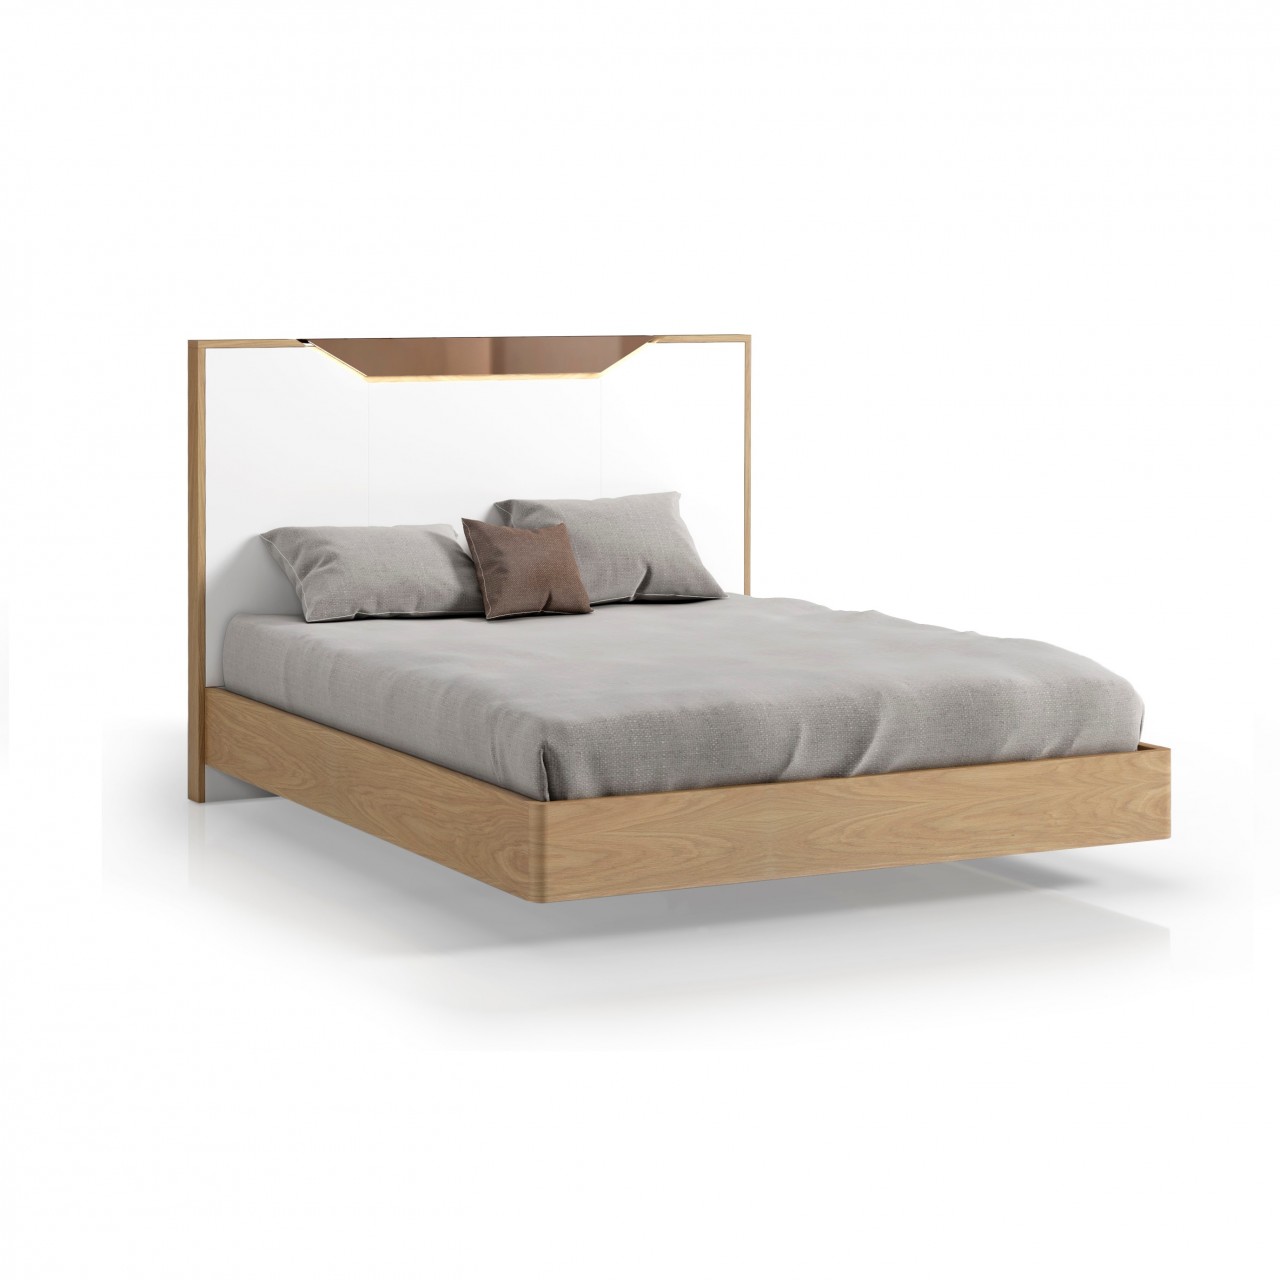 O sonho de uma noite tranquila começa com a cama de casal Luca New. Esta cama moderna e elegante garante um descanso perfeito para todos os dias.